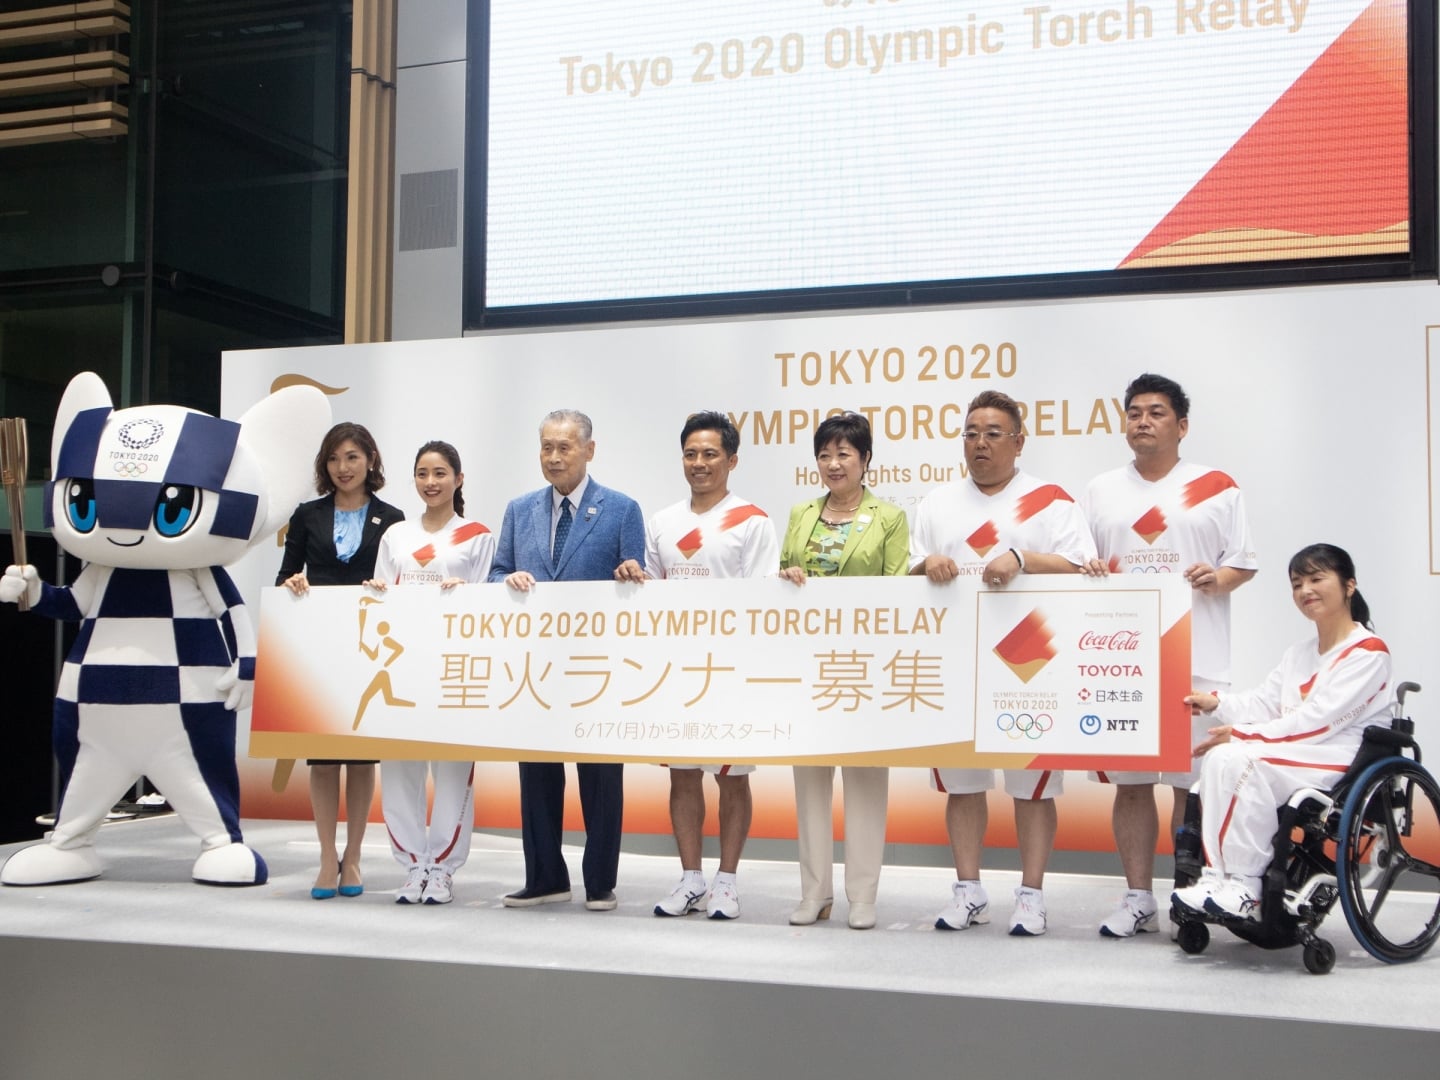 # 尾花大輔執刀設計：傳遞2020東京奧運聖火之旅 1